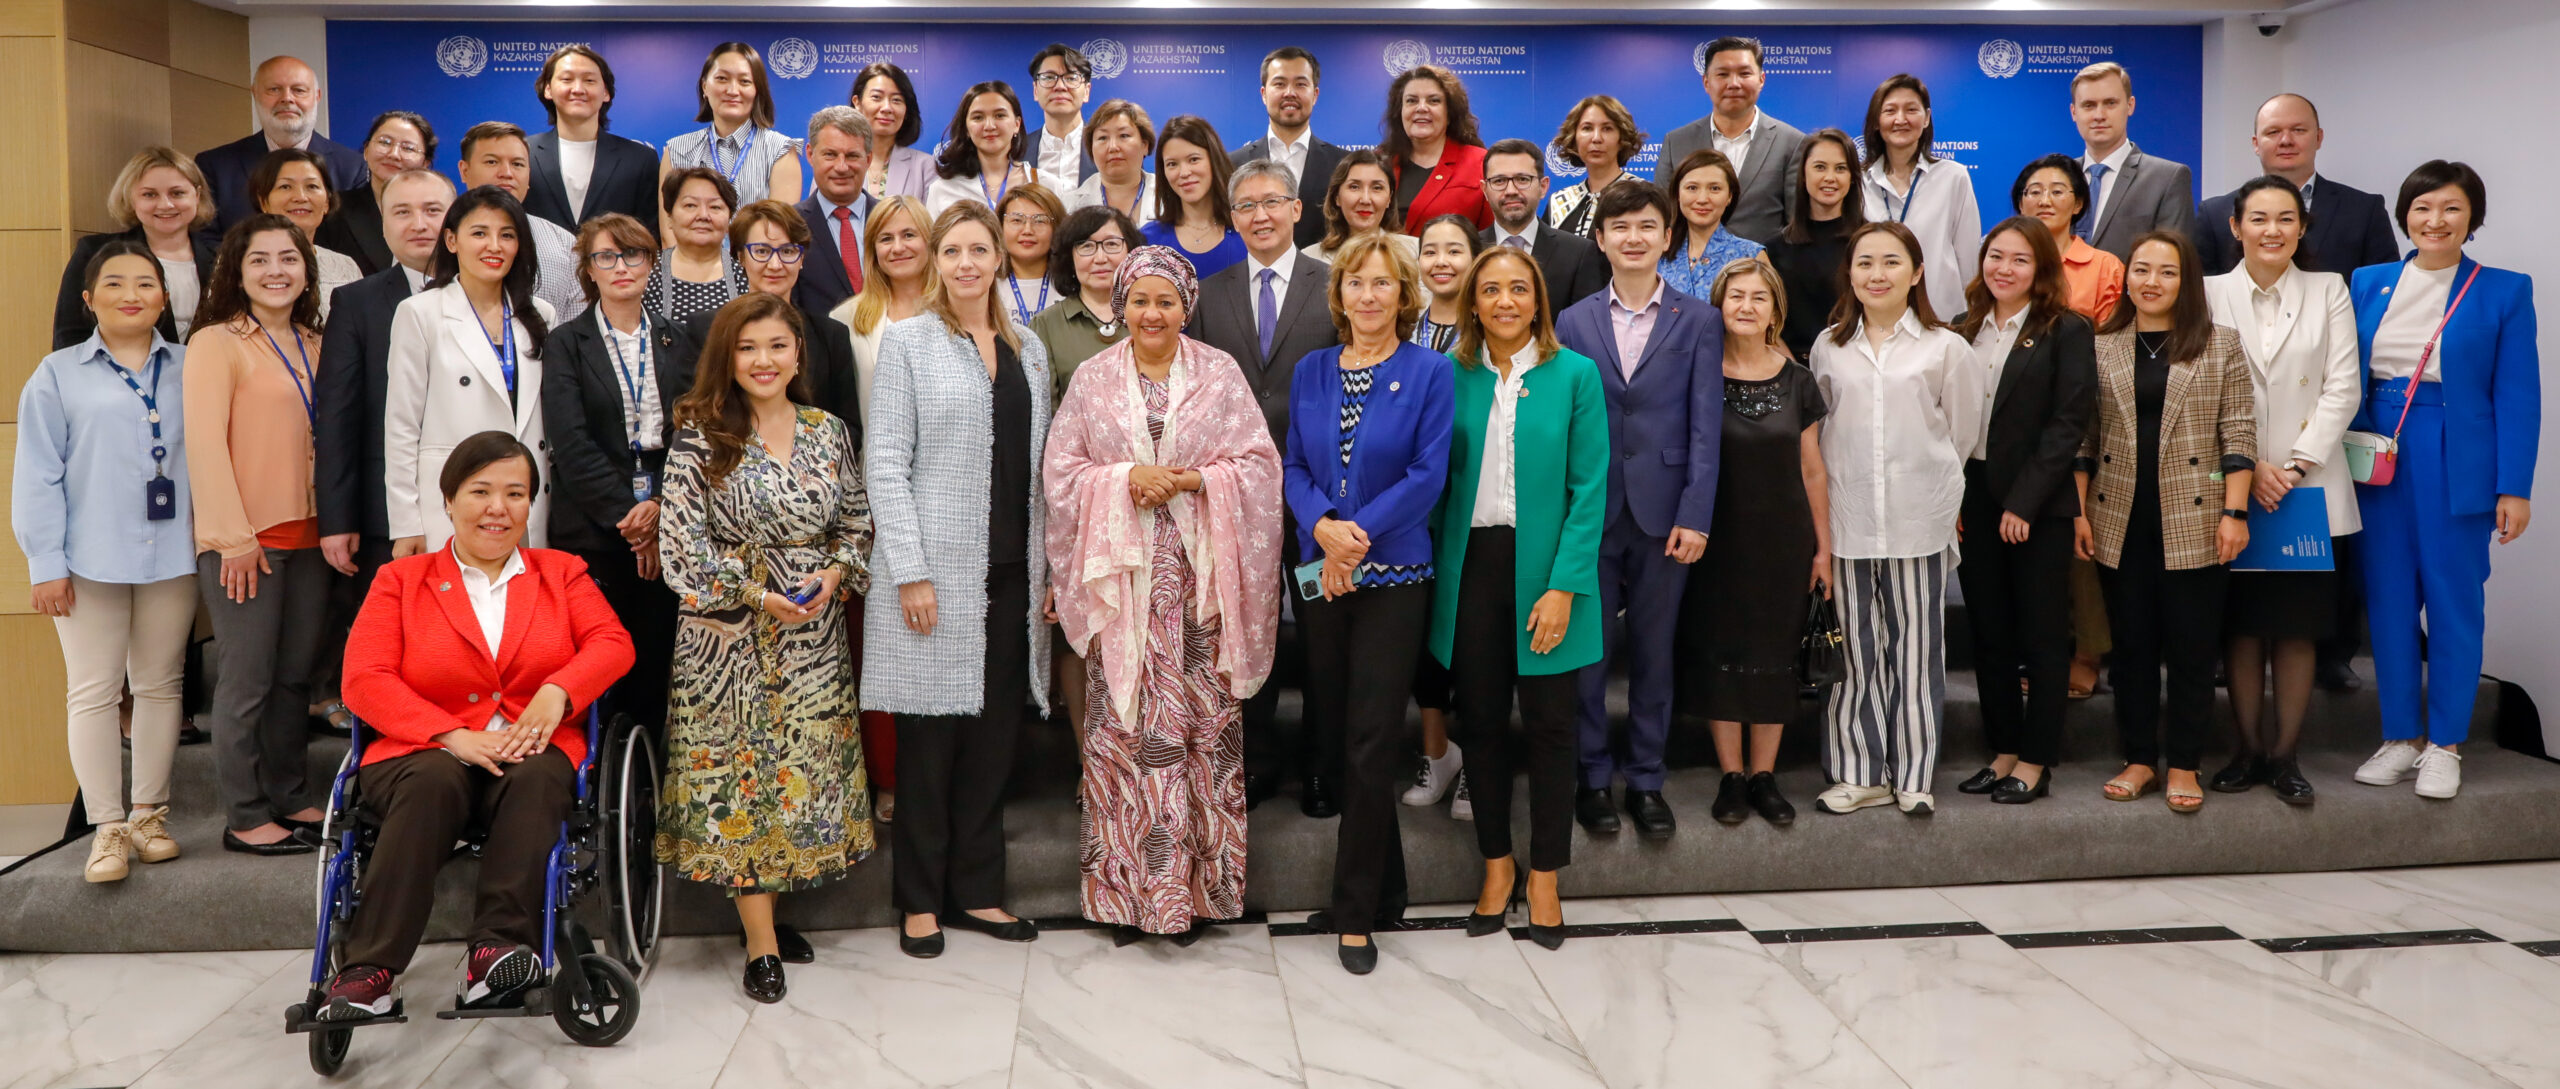 Сотрудники ООН позирует для групповой фотографии с заместителем Генерального секретаря ООН Аминой Мохаммед во время ее визита в Казахстан. Фото любезно предоставлено: Представительство ООН в Казахстане.